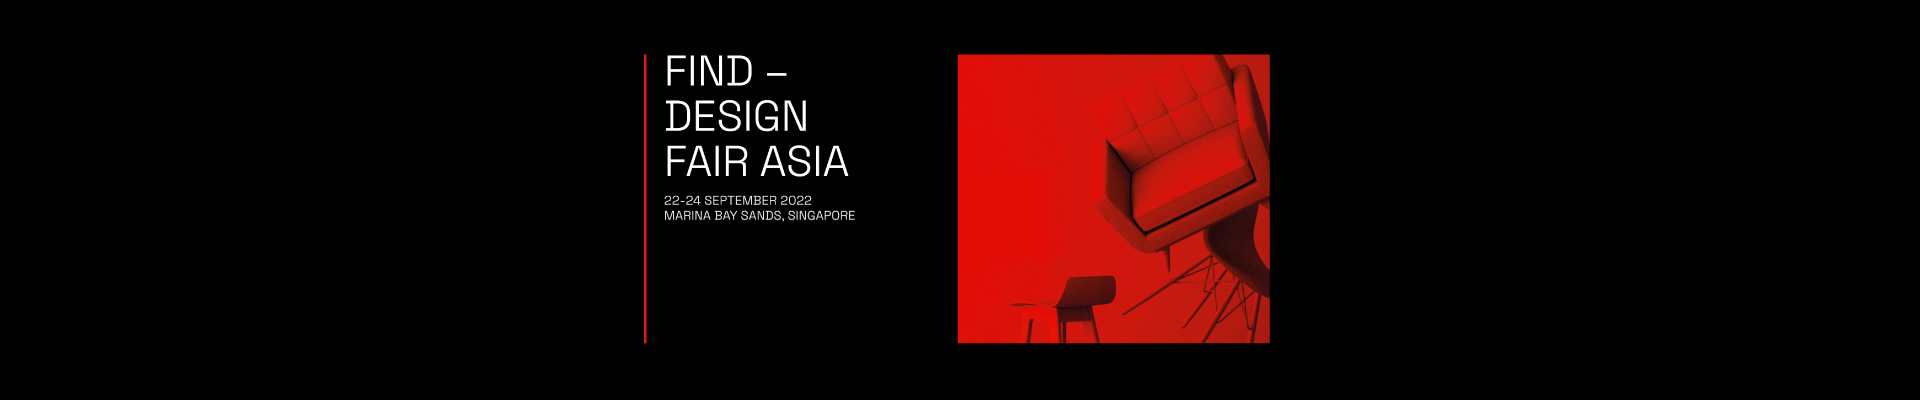 Agglotech s'envole à Singapour pour FIND - Design Fair Asia